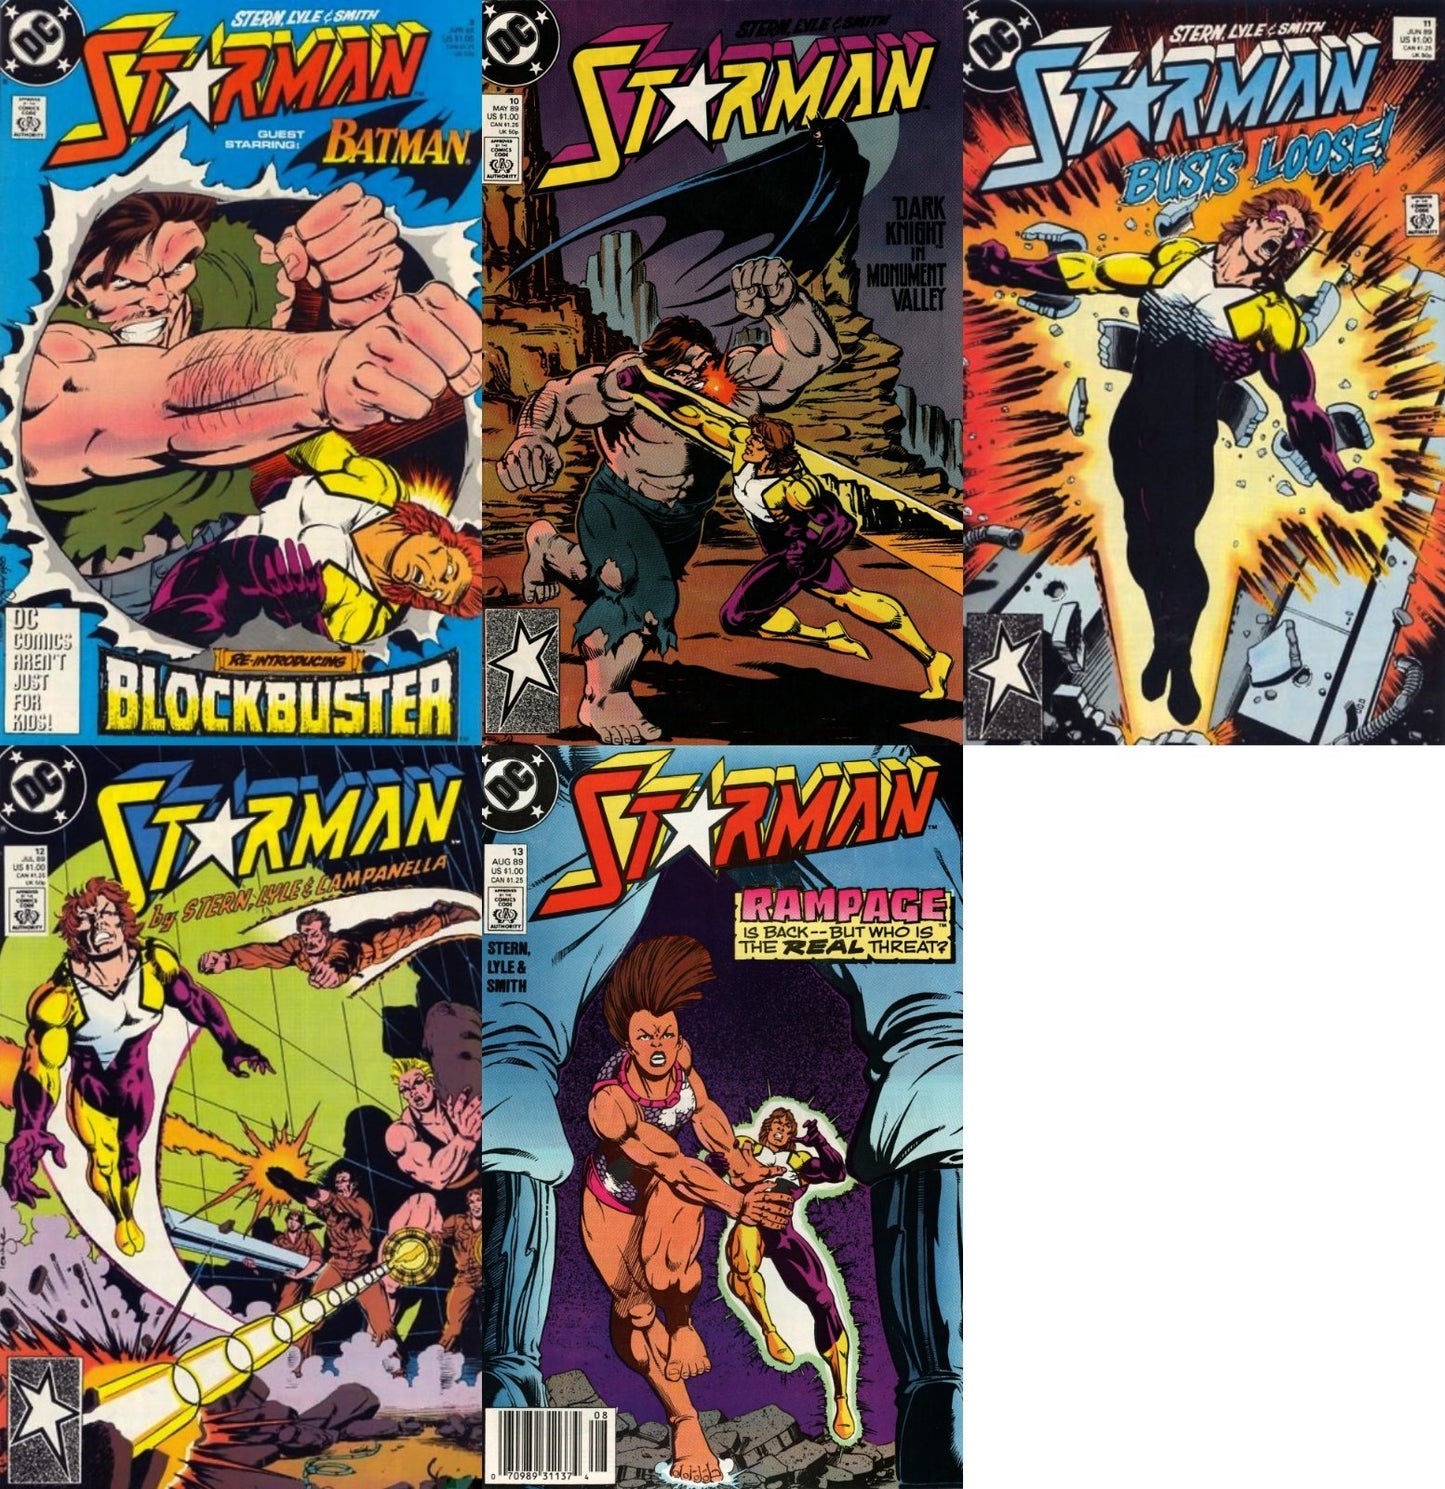 Starman #9-13 Newsstand & Direct Covers (1988-1992) DC Comics - 5 Comics